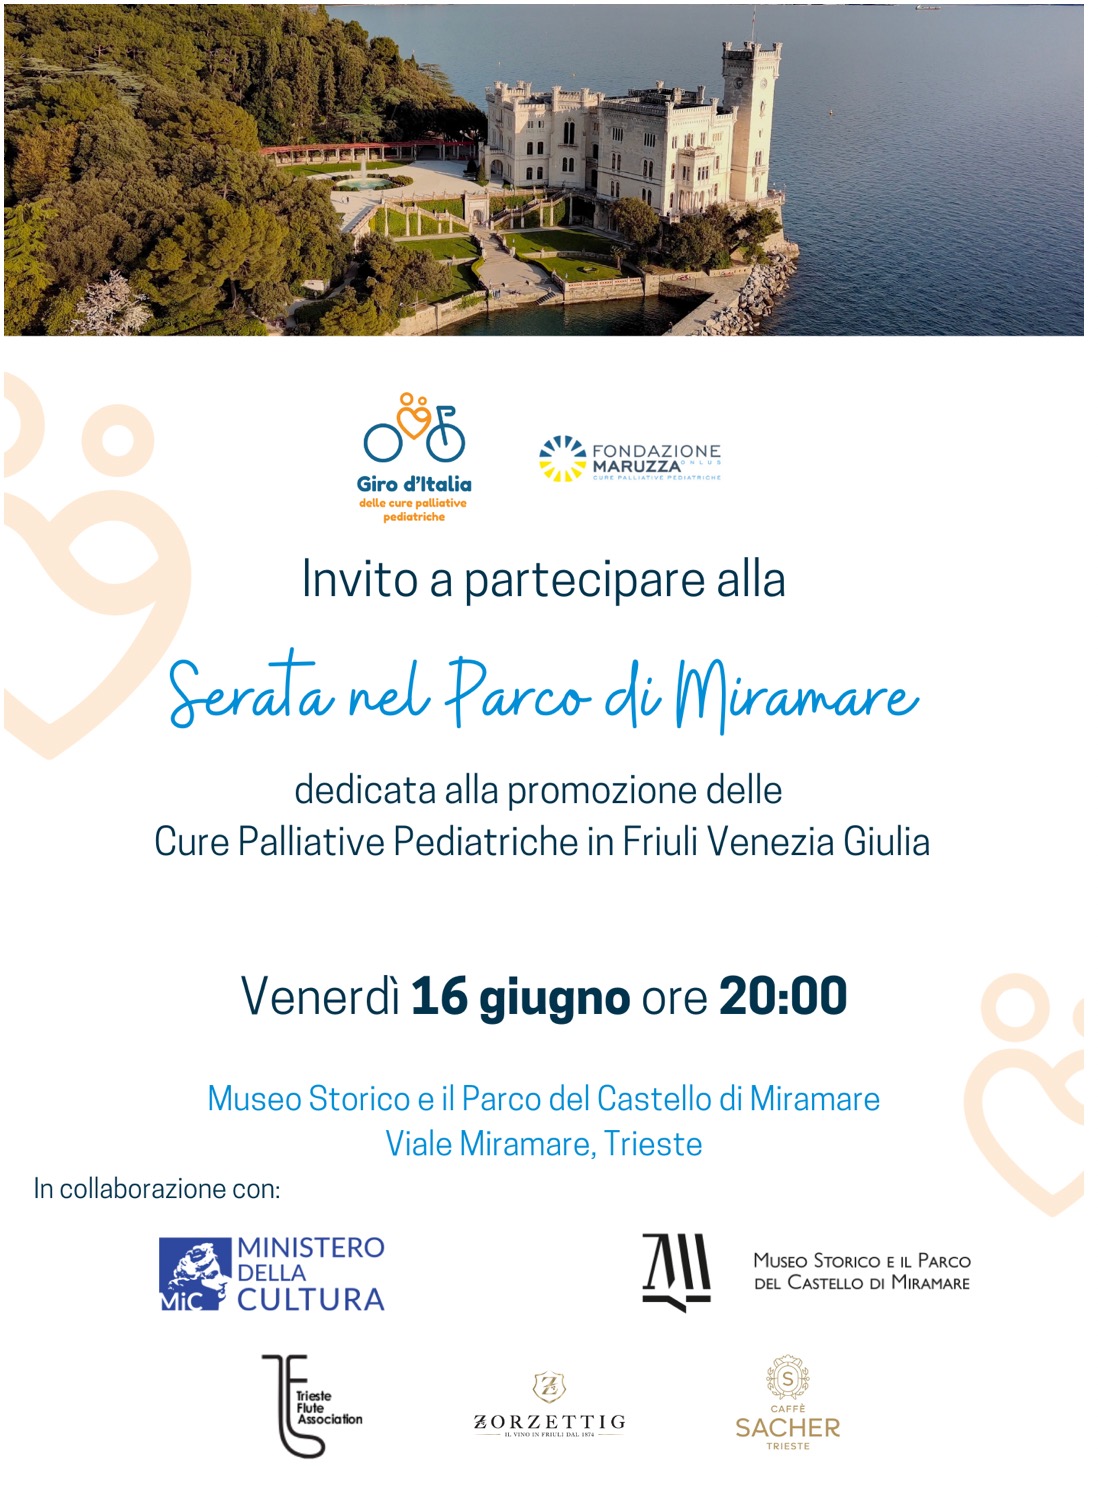 Serata nel Parco di Miramare dedicata alla promozione delle Cure Palliative Pediatriche in Friuli Venezia Giulia